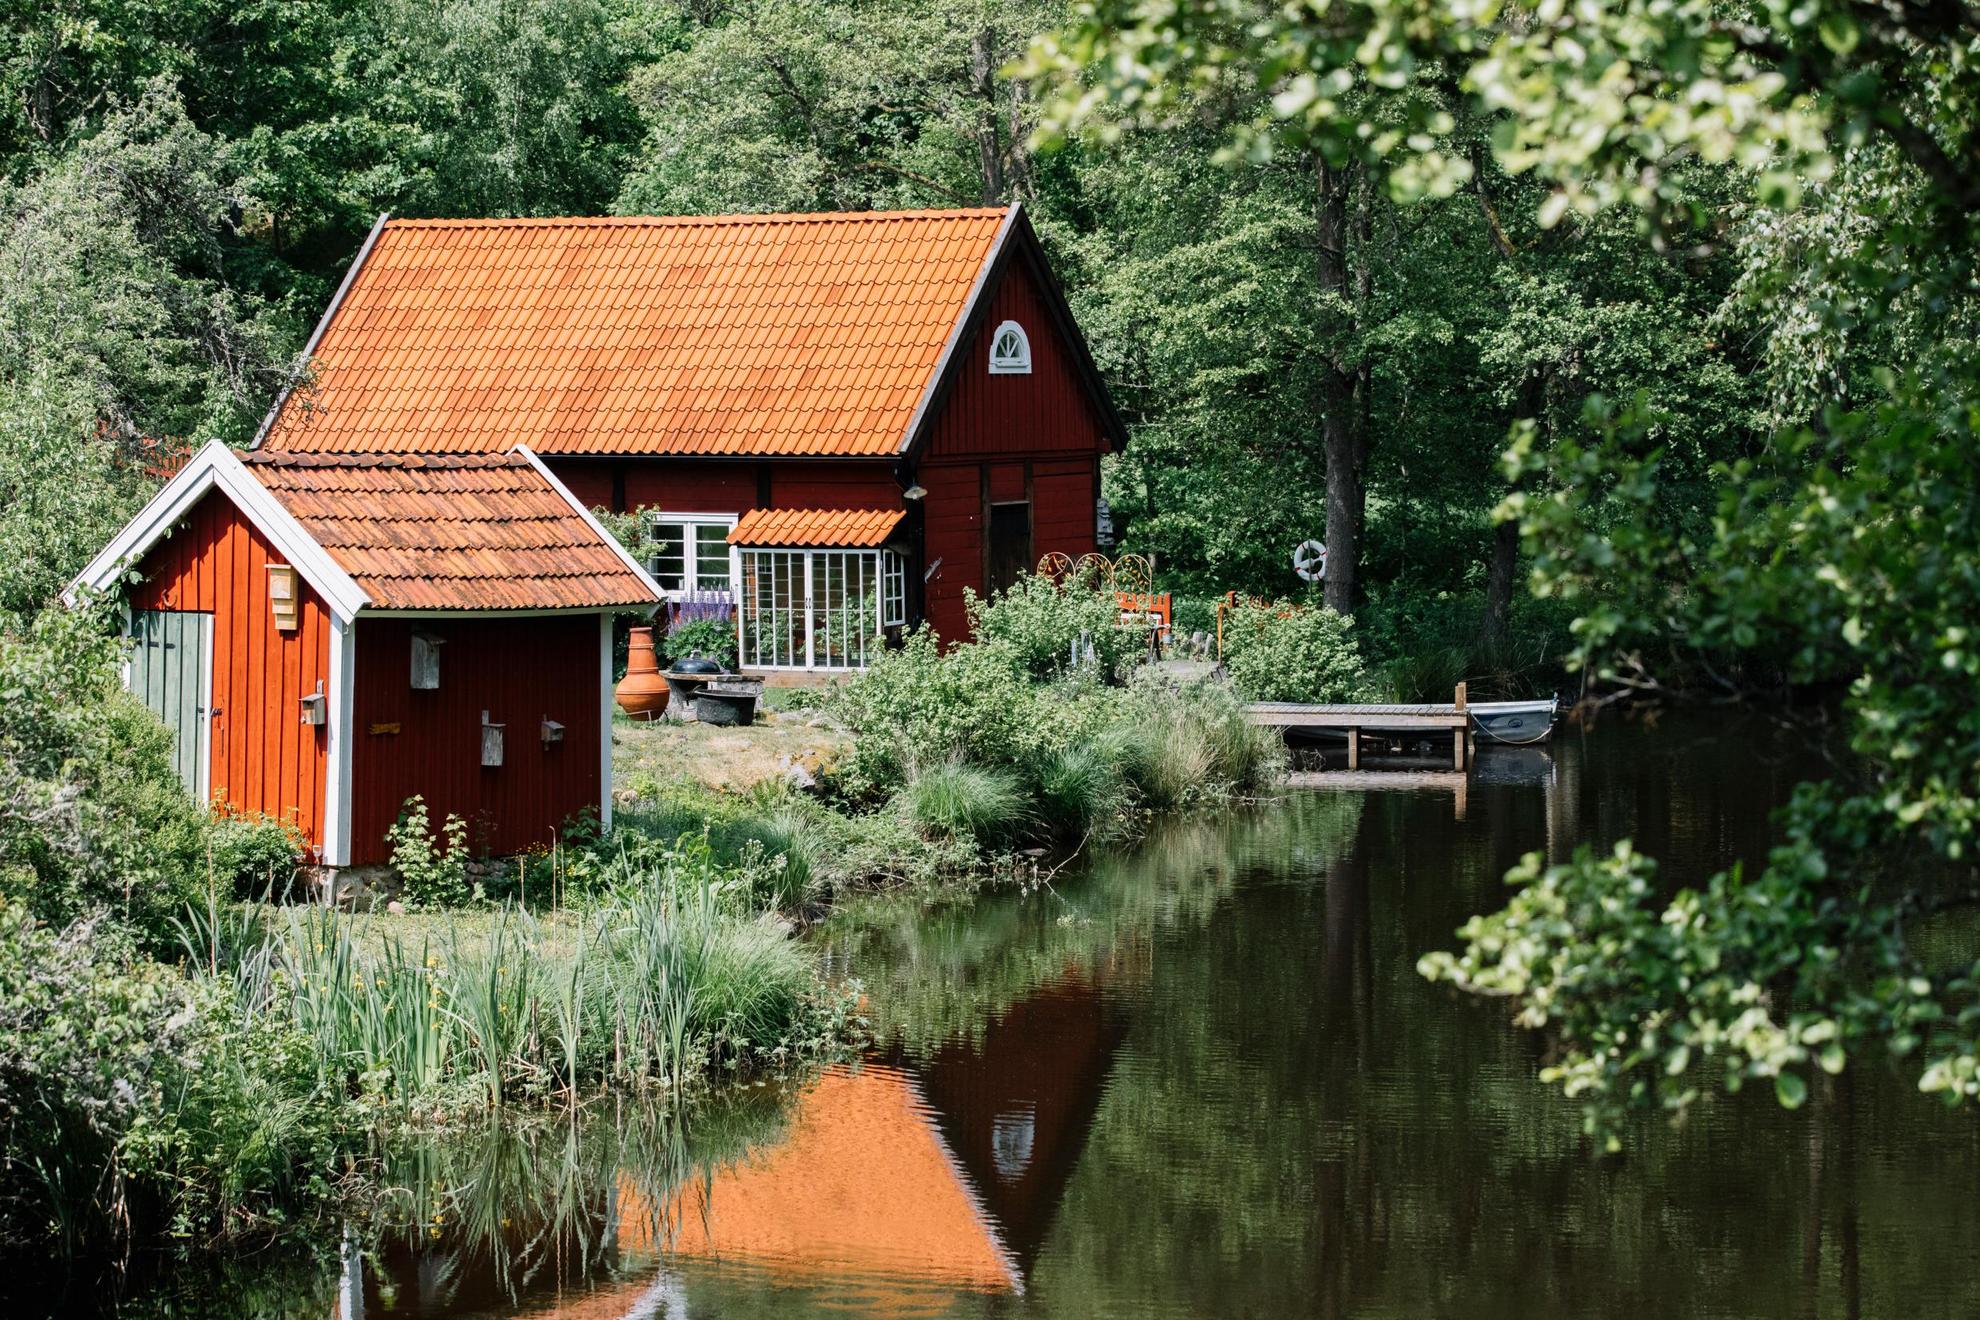 Neben einem See mit üppigem Wald drumherum gibt es ein traditionelles rotes Häuschen und ein kleines rotes Gästehaus.